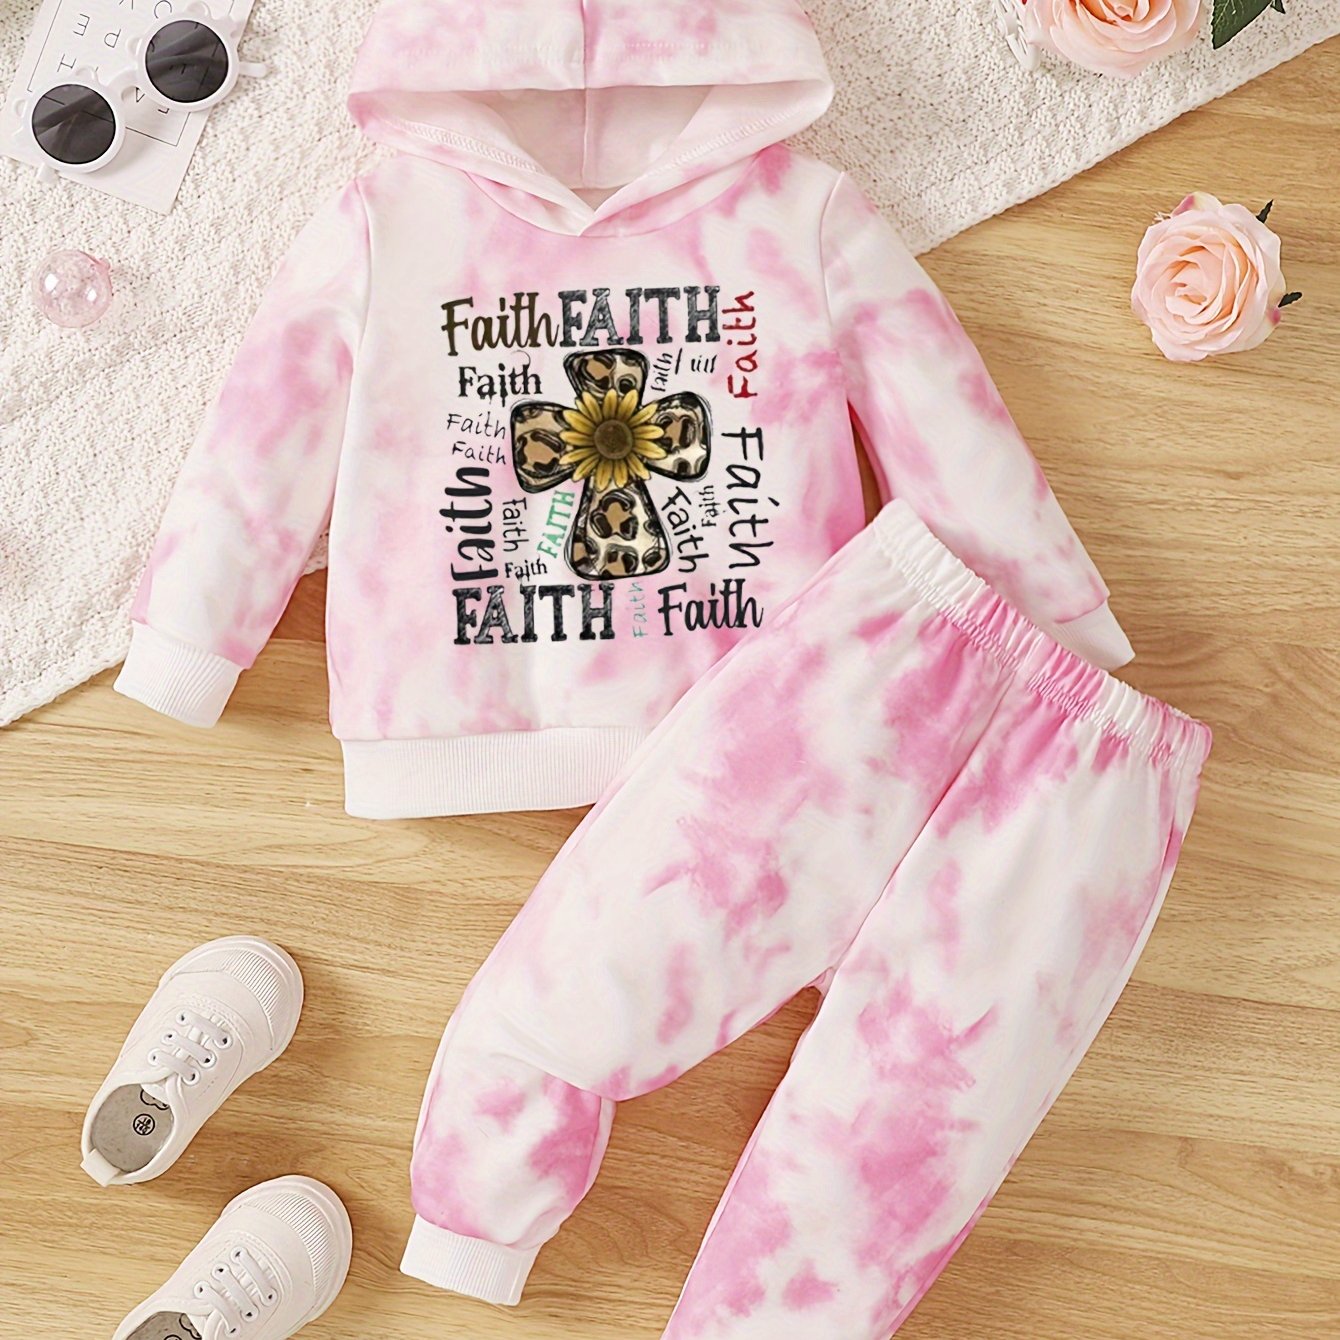 FAITH (sunflower cross) Toddler Christian Casual Outfit claimedbygoddesigns